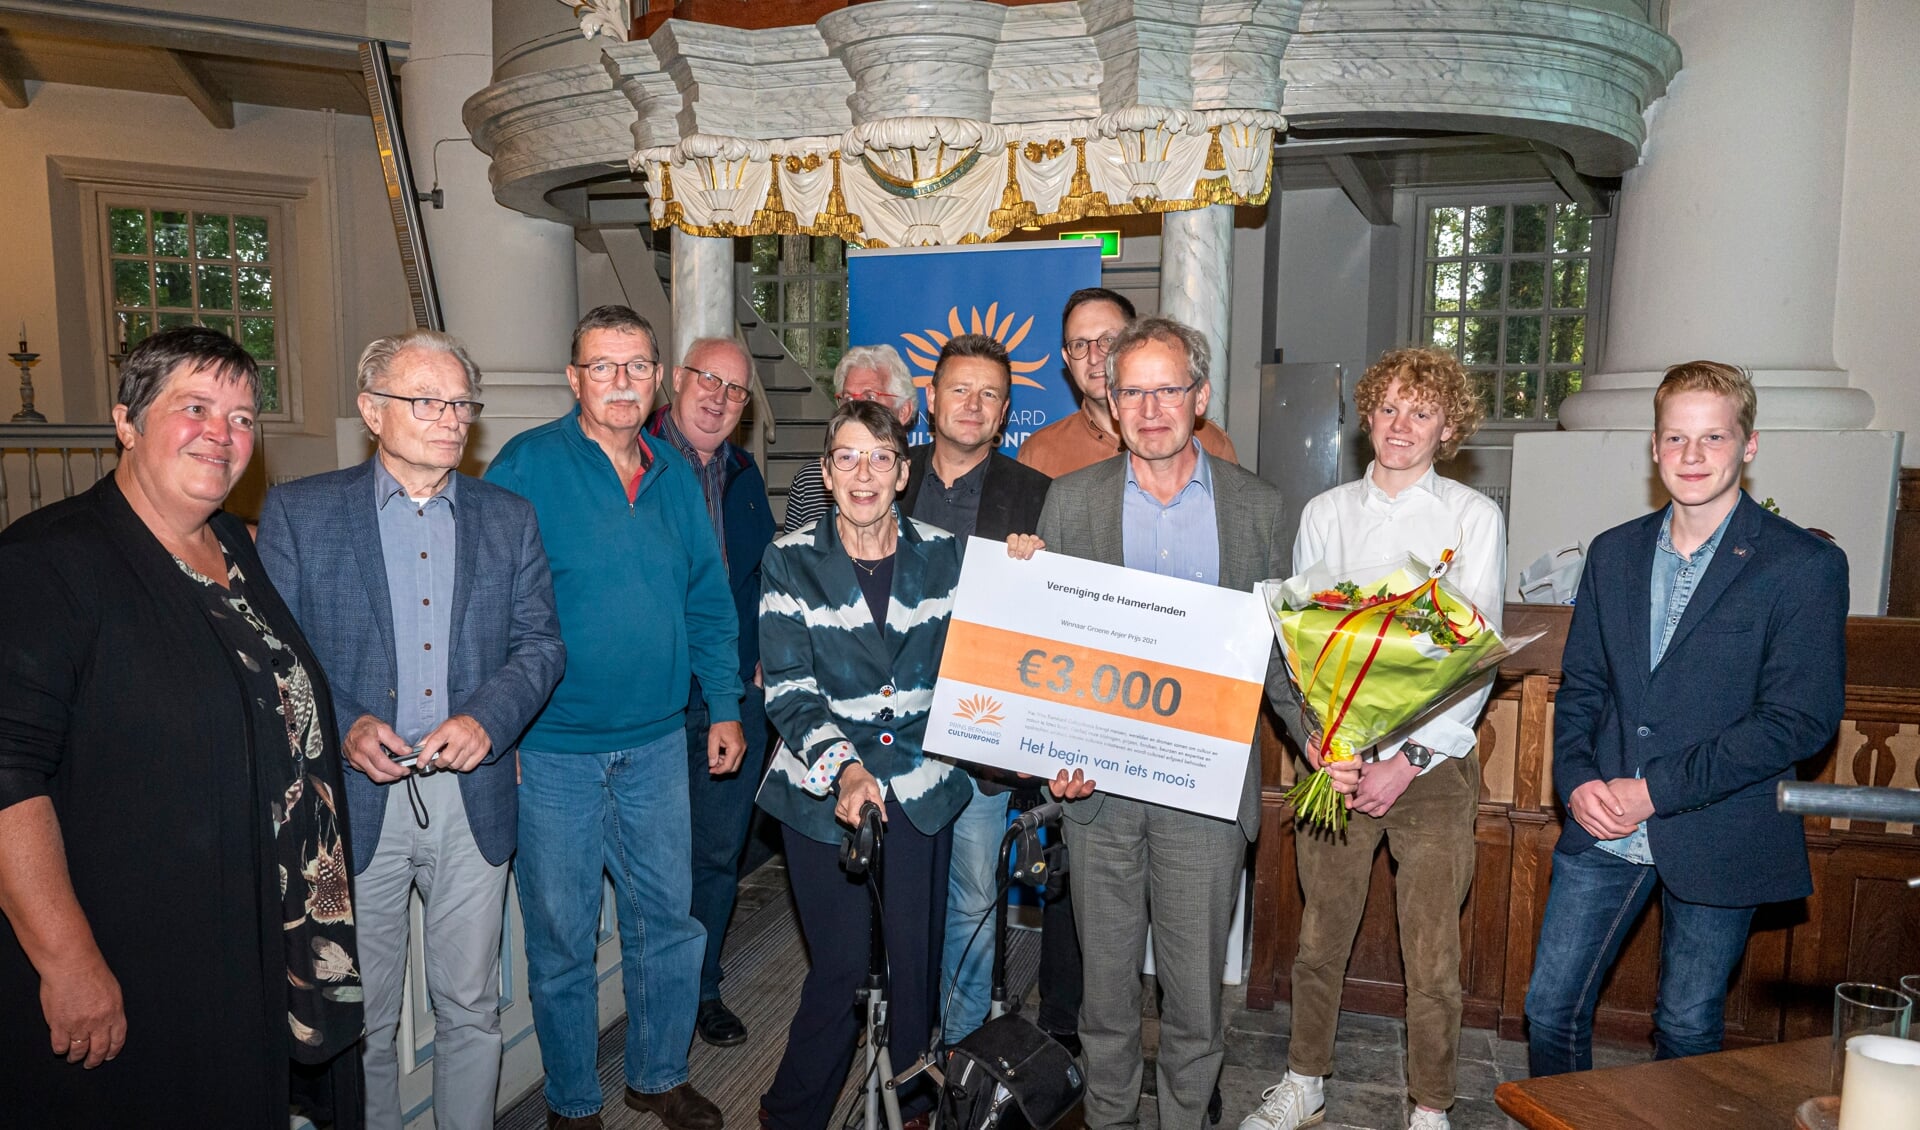 Vereniging de Hamerlanden krijgt in Veenhuizen de cheque van 3.000 euro overhandigd door de Commissaris van de Koning in Drenthe, Jetta Klijnsma. (foto: Marcel Jurian de Jong)